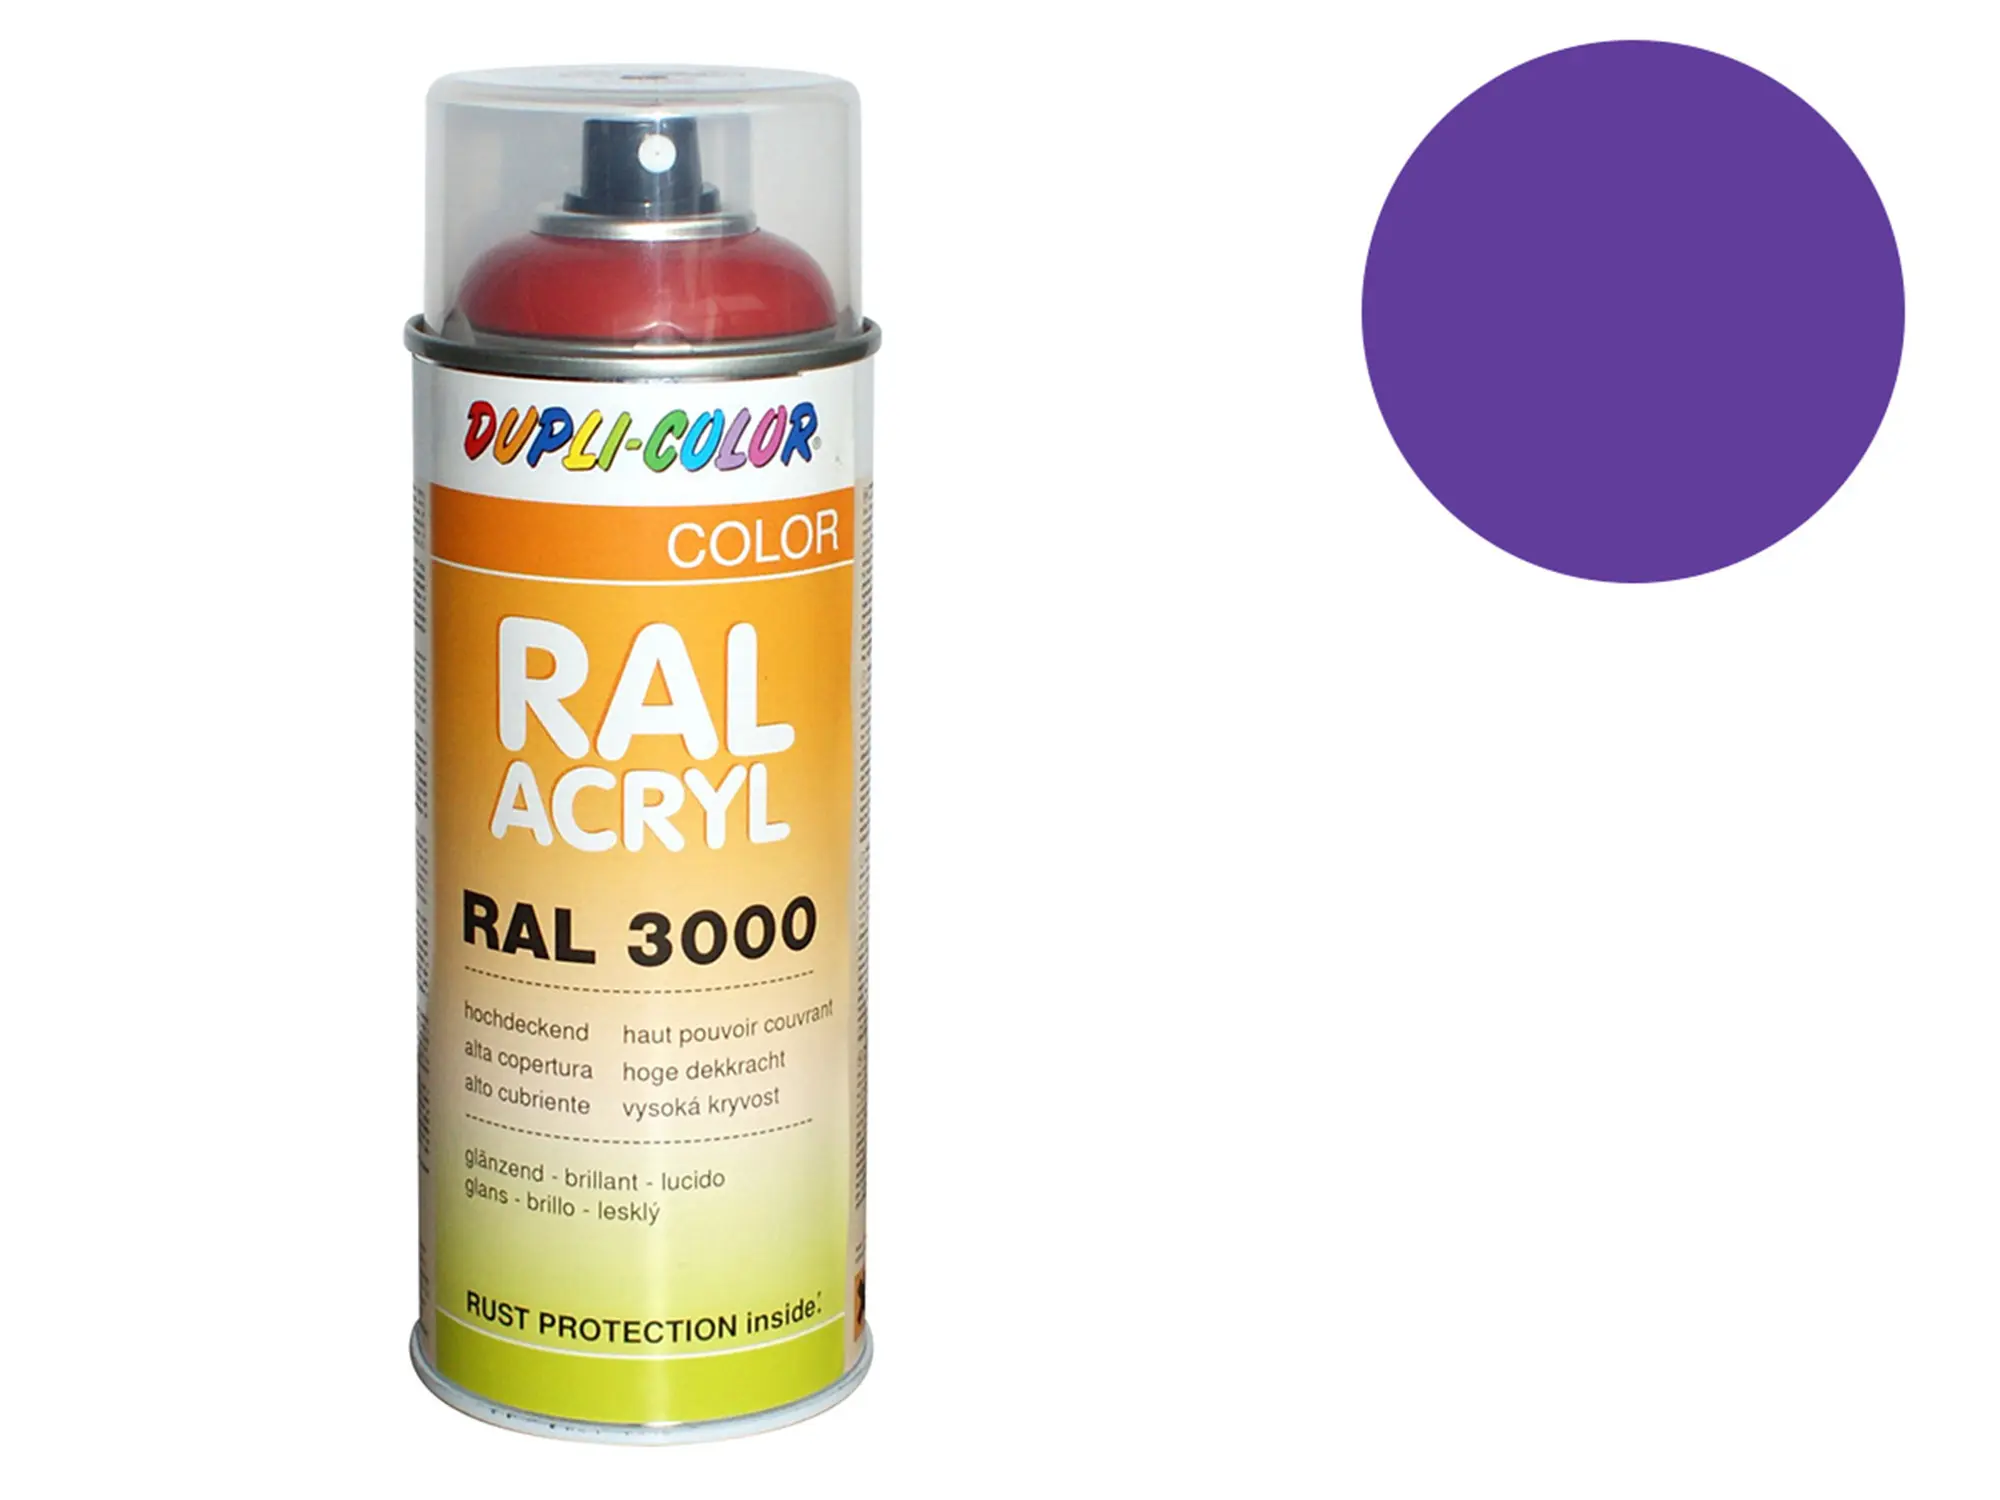 Dupli-Color Acryl-Spray RAL 4005 blaulila, glänzend - 400 ml, Art.-Nr.: 10064779 - Bild 1